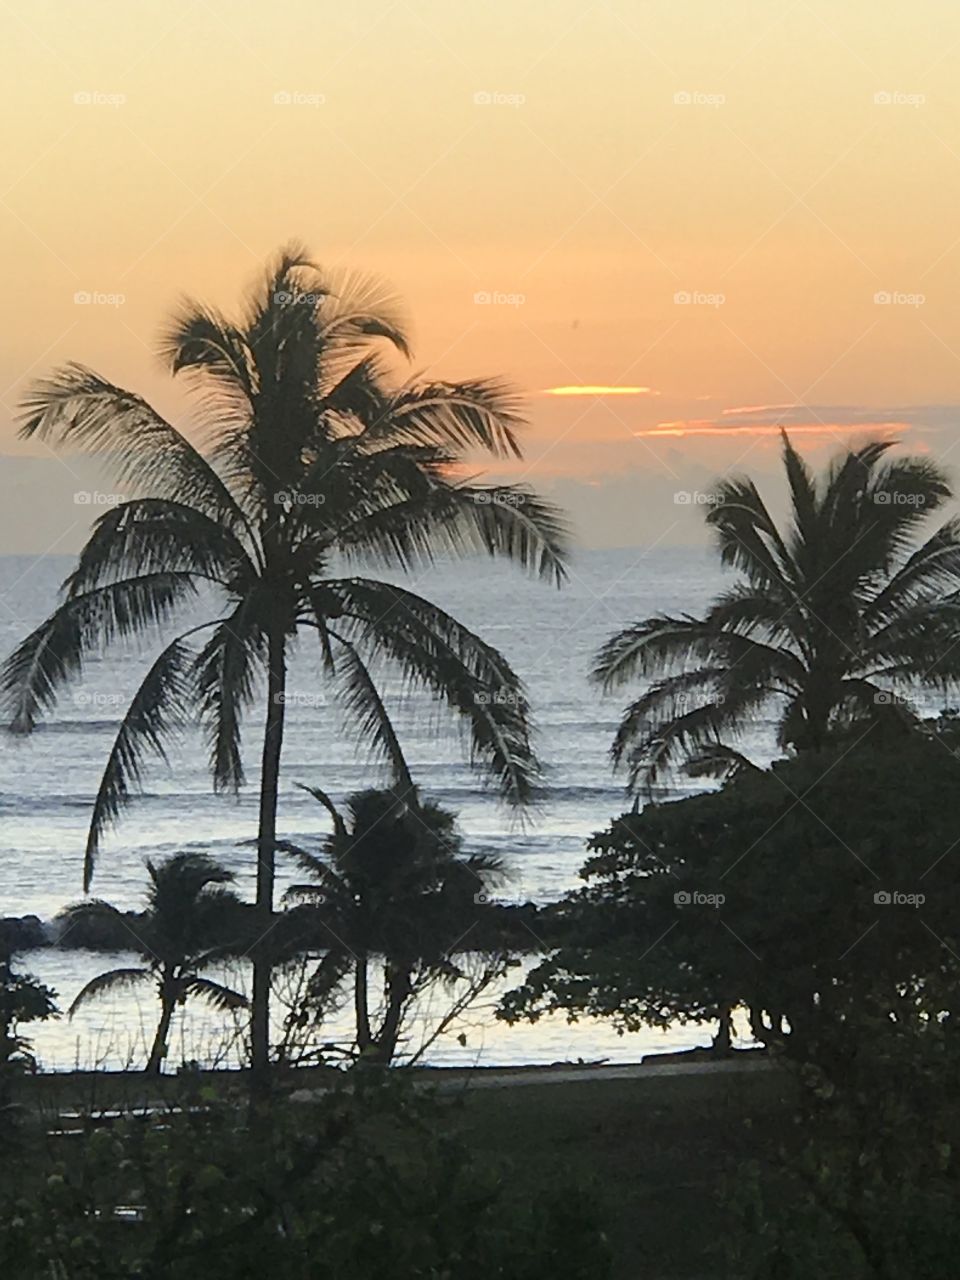 Dusk in Kauai